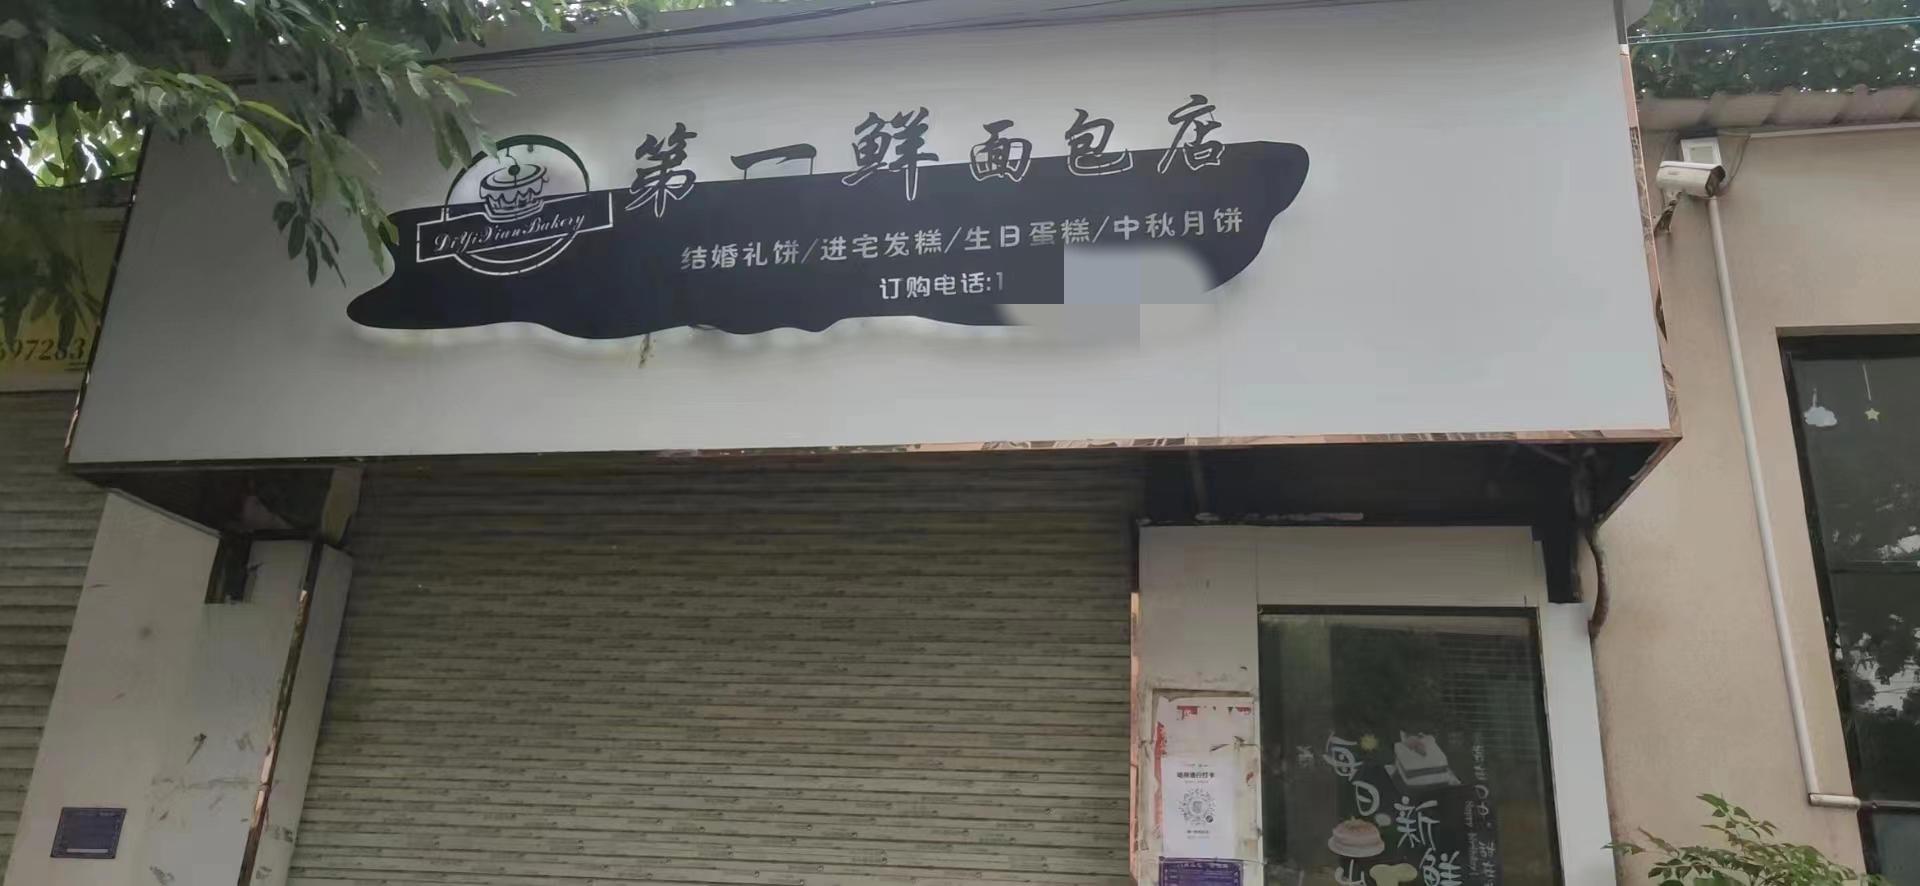 广东10岁女孩食用校外面包店售卖面包后身亡 公安调查系杀鼠药中毒